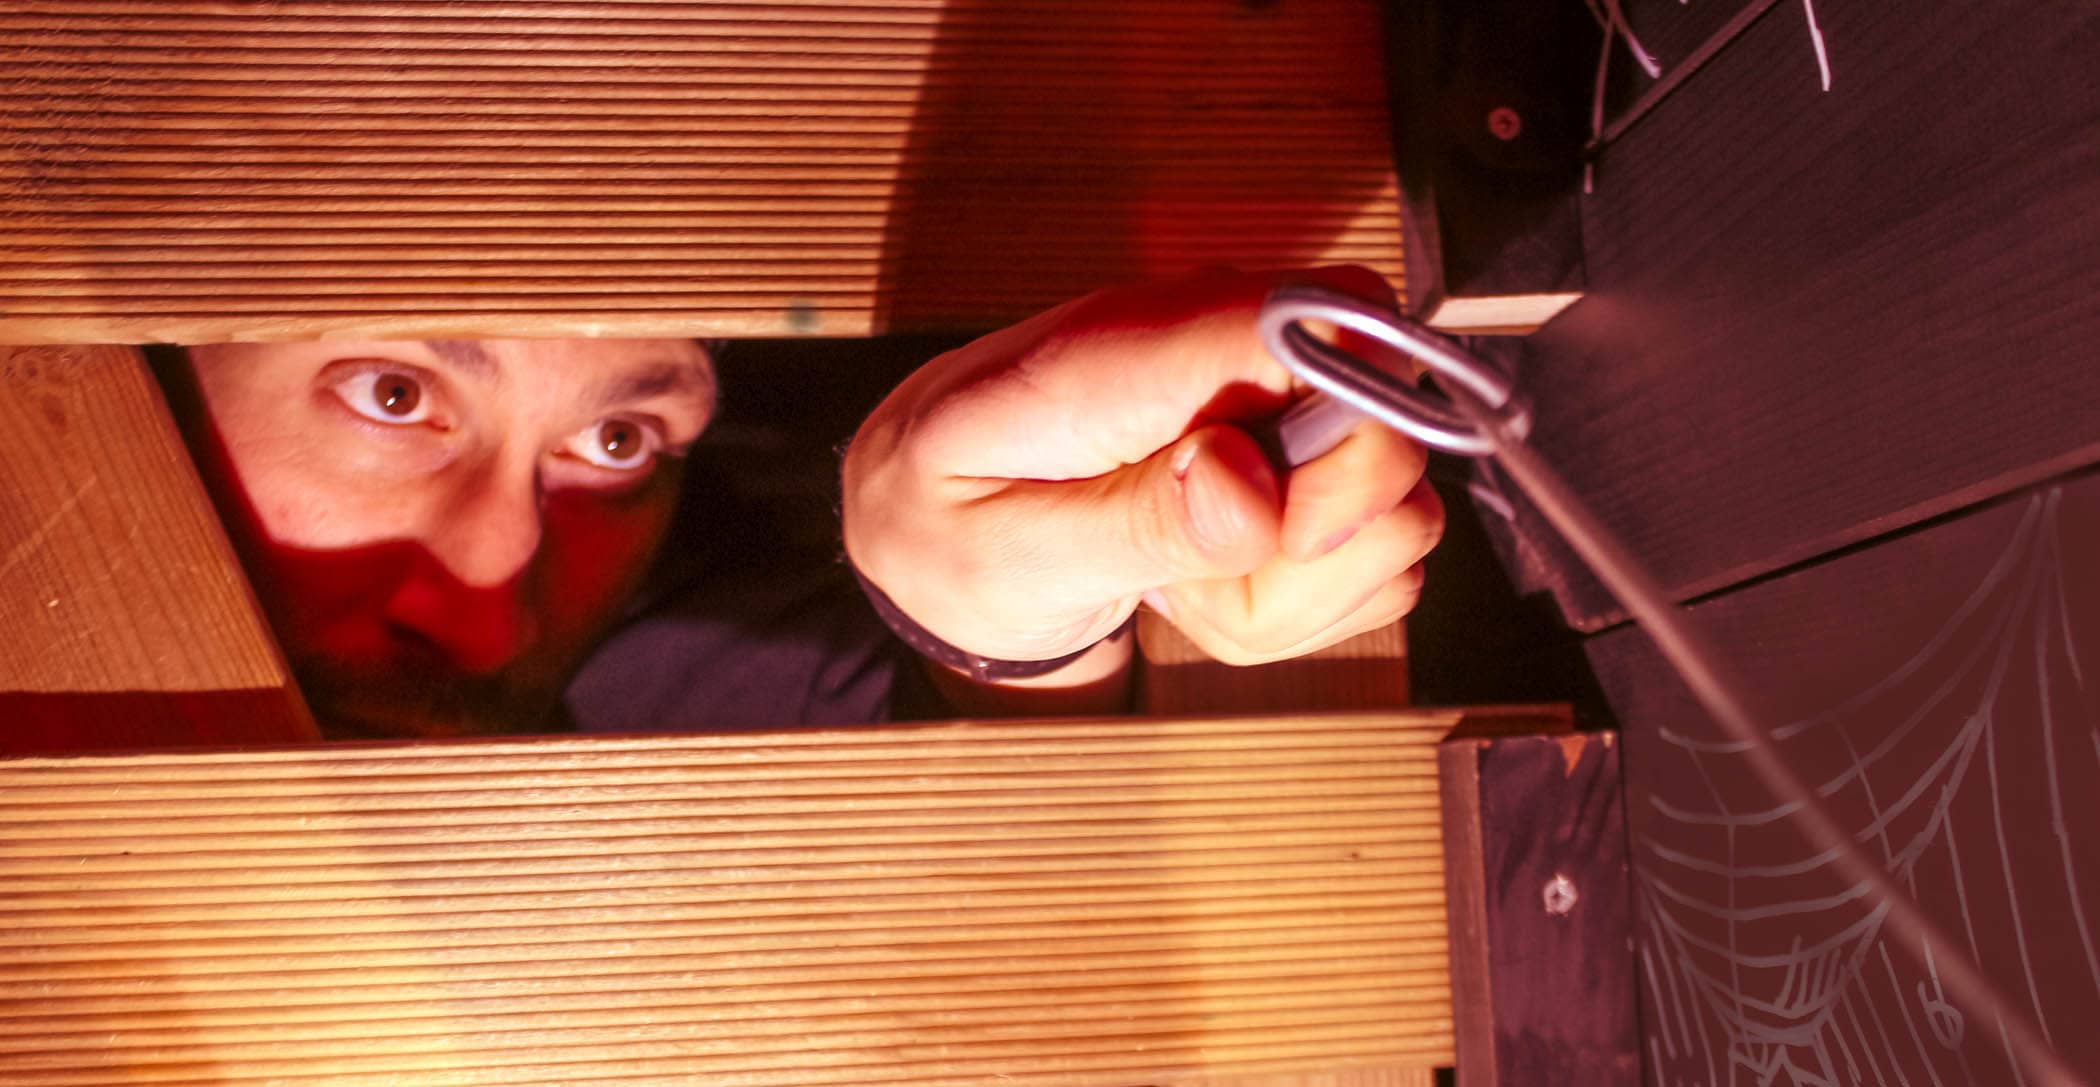 Un joueur est coincé dans une escape room et récupère une clé à travers des planches de bois